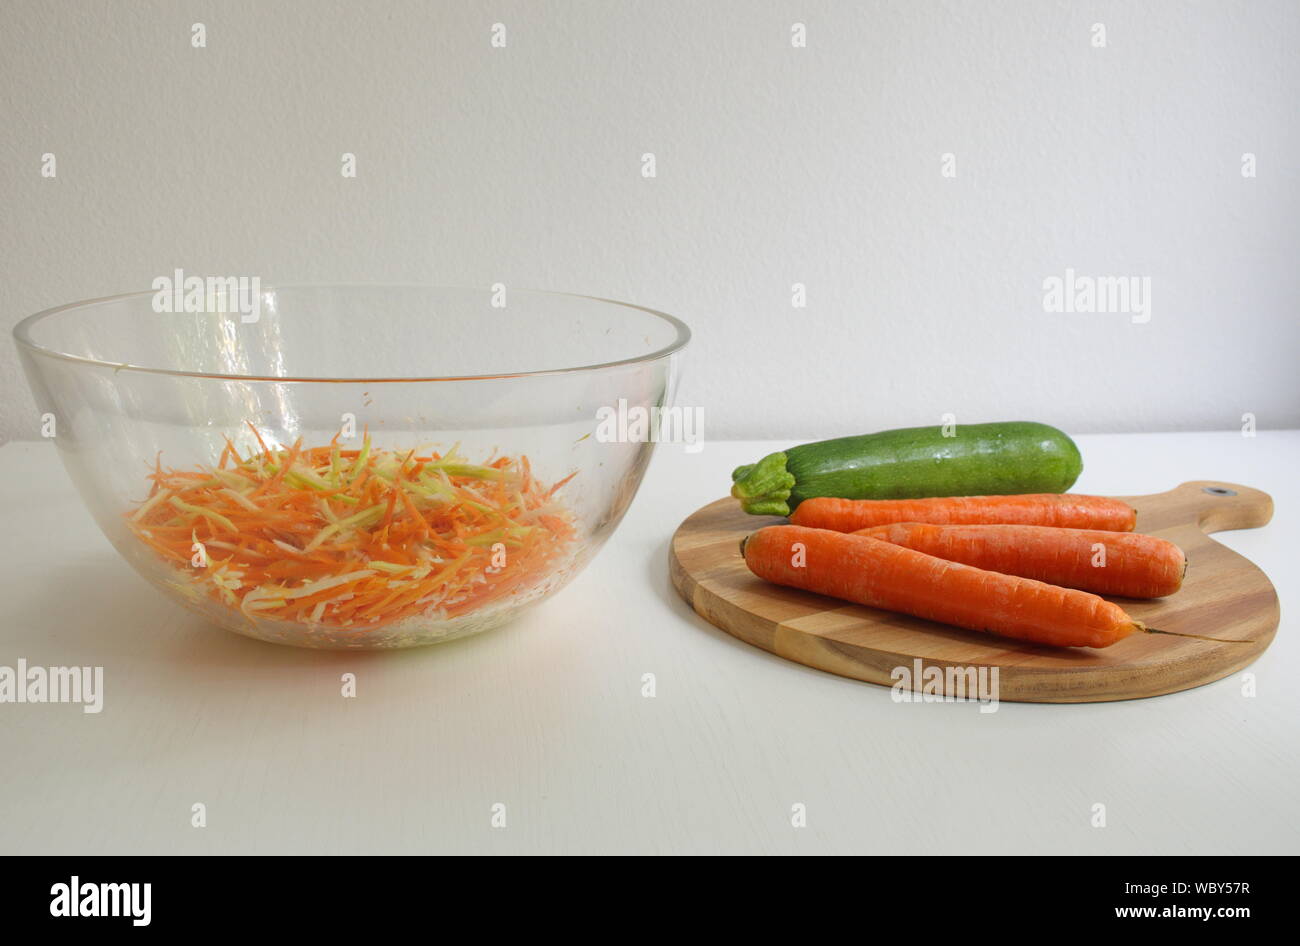 La carota e la zucca sul tagliere di legno. Verdure grattugiato nella vaschetta trasparente Foto Stock